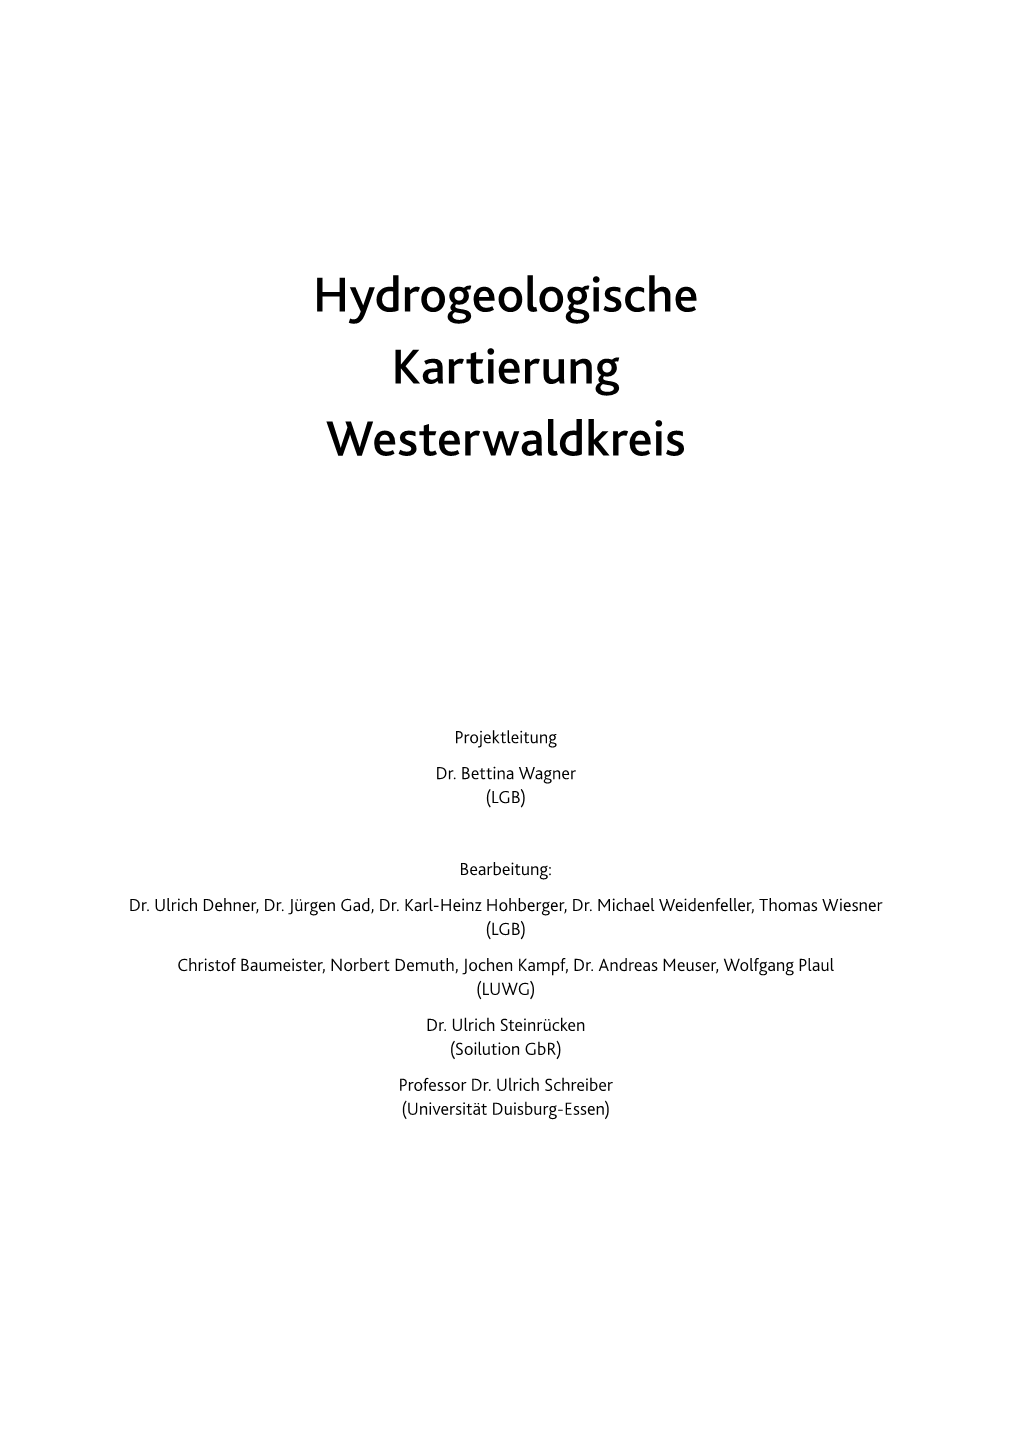 Hydrogeologische Kartierung Westerwaldkreis